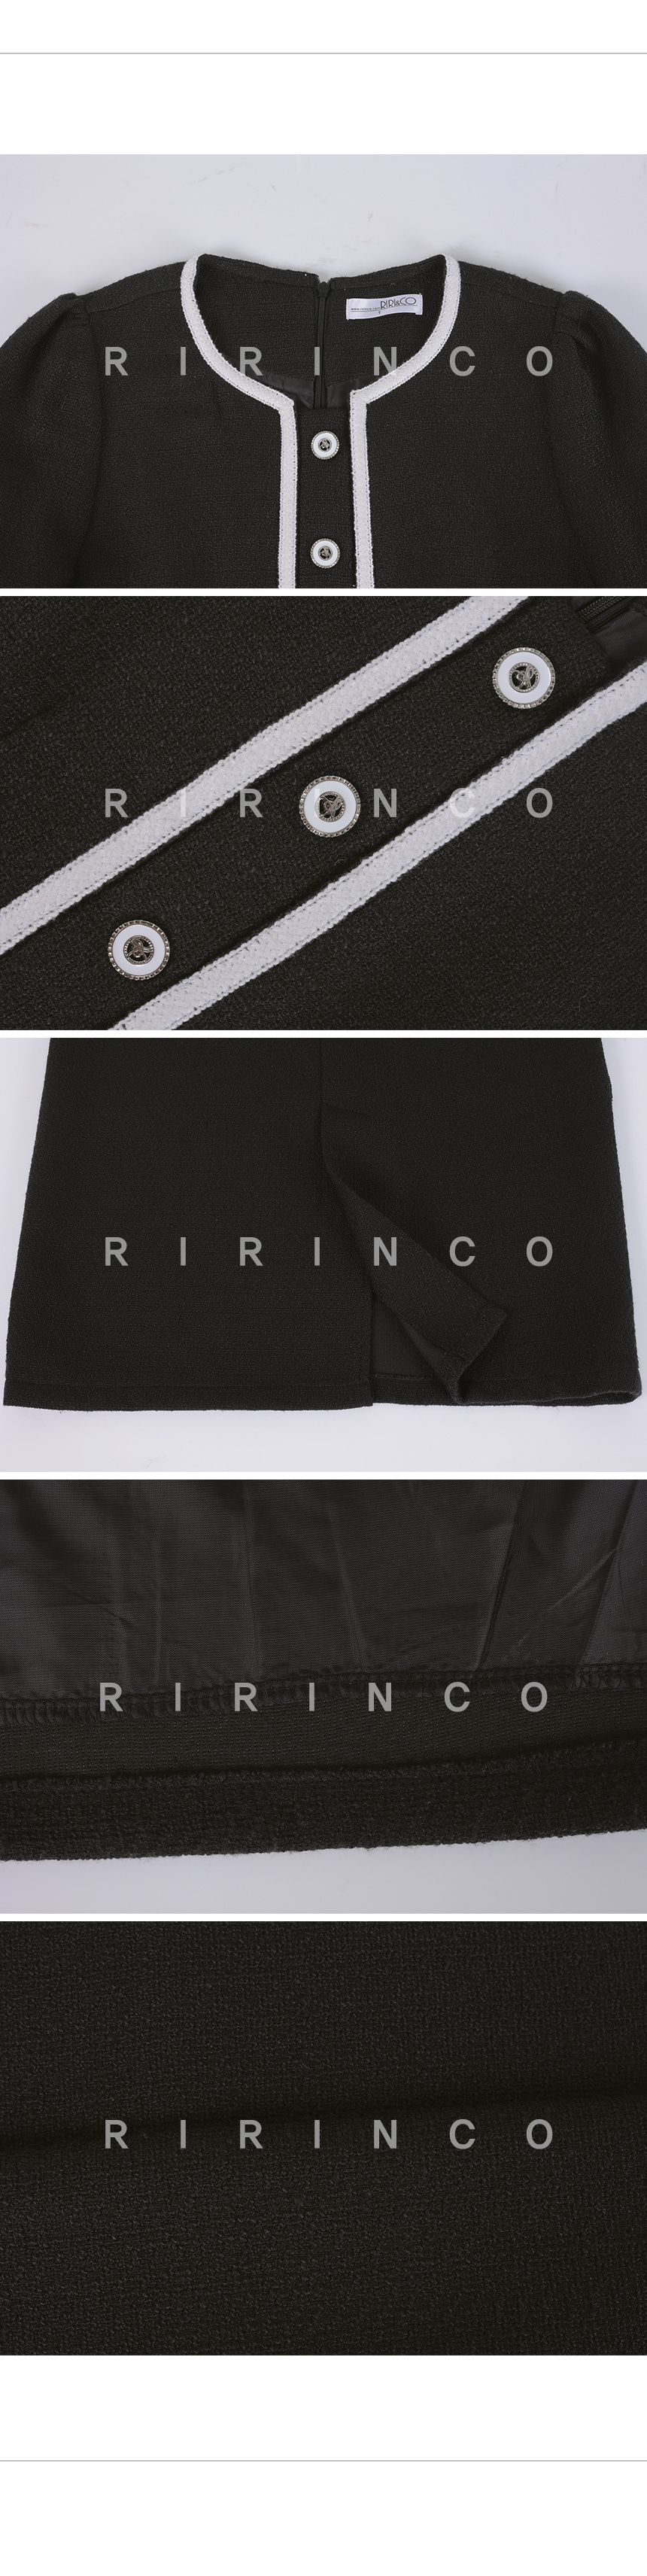 RIRINCO 配色ツイードポケットロングワンピース 